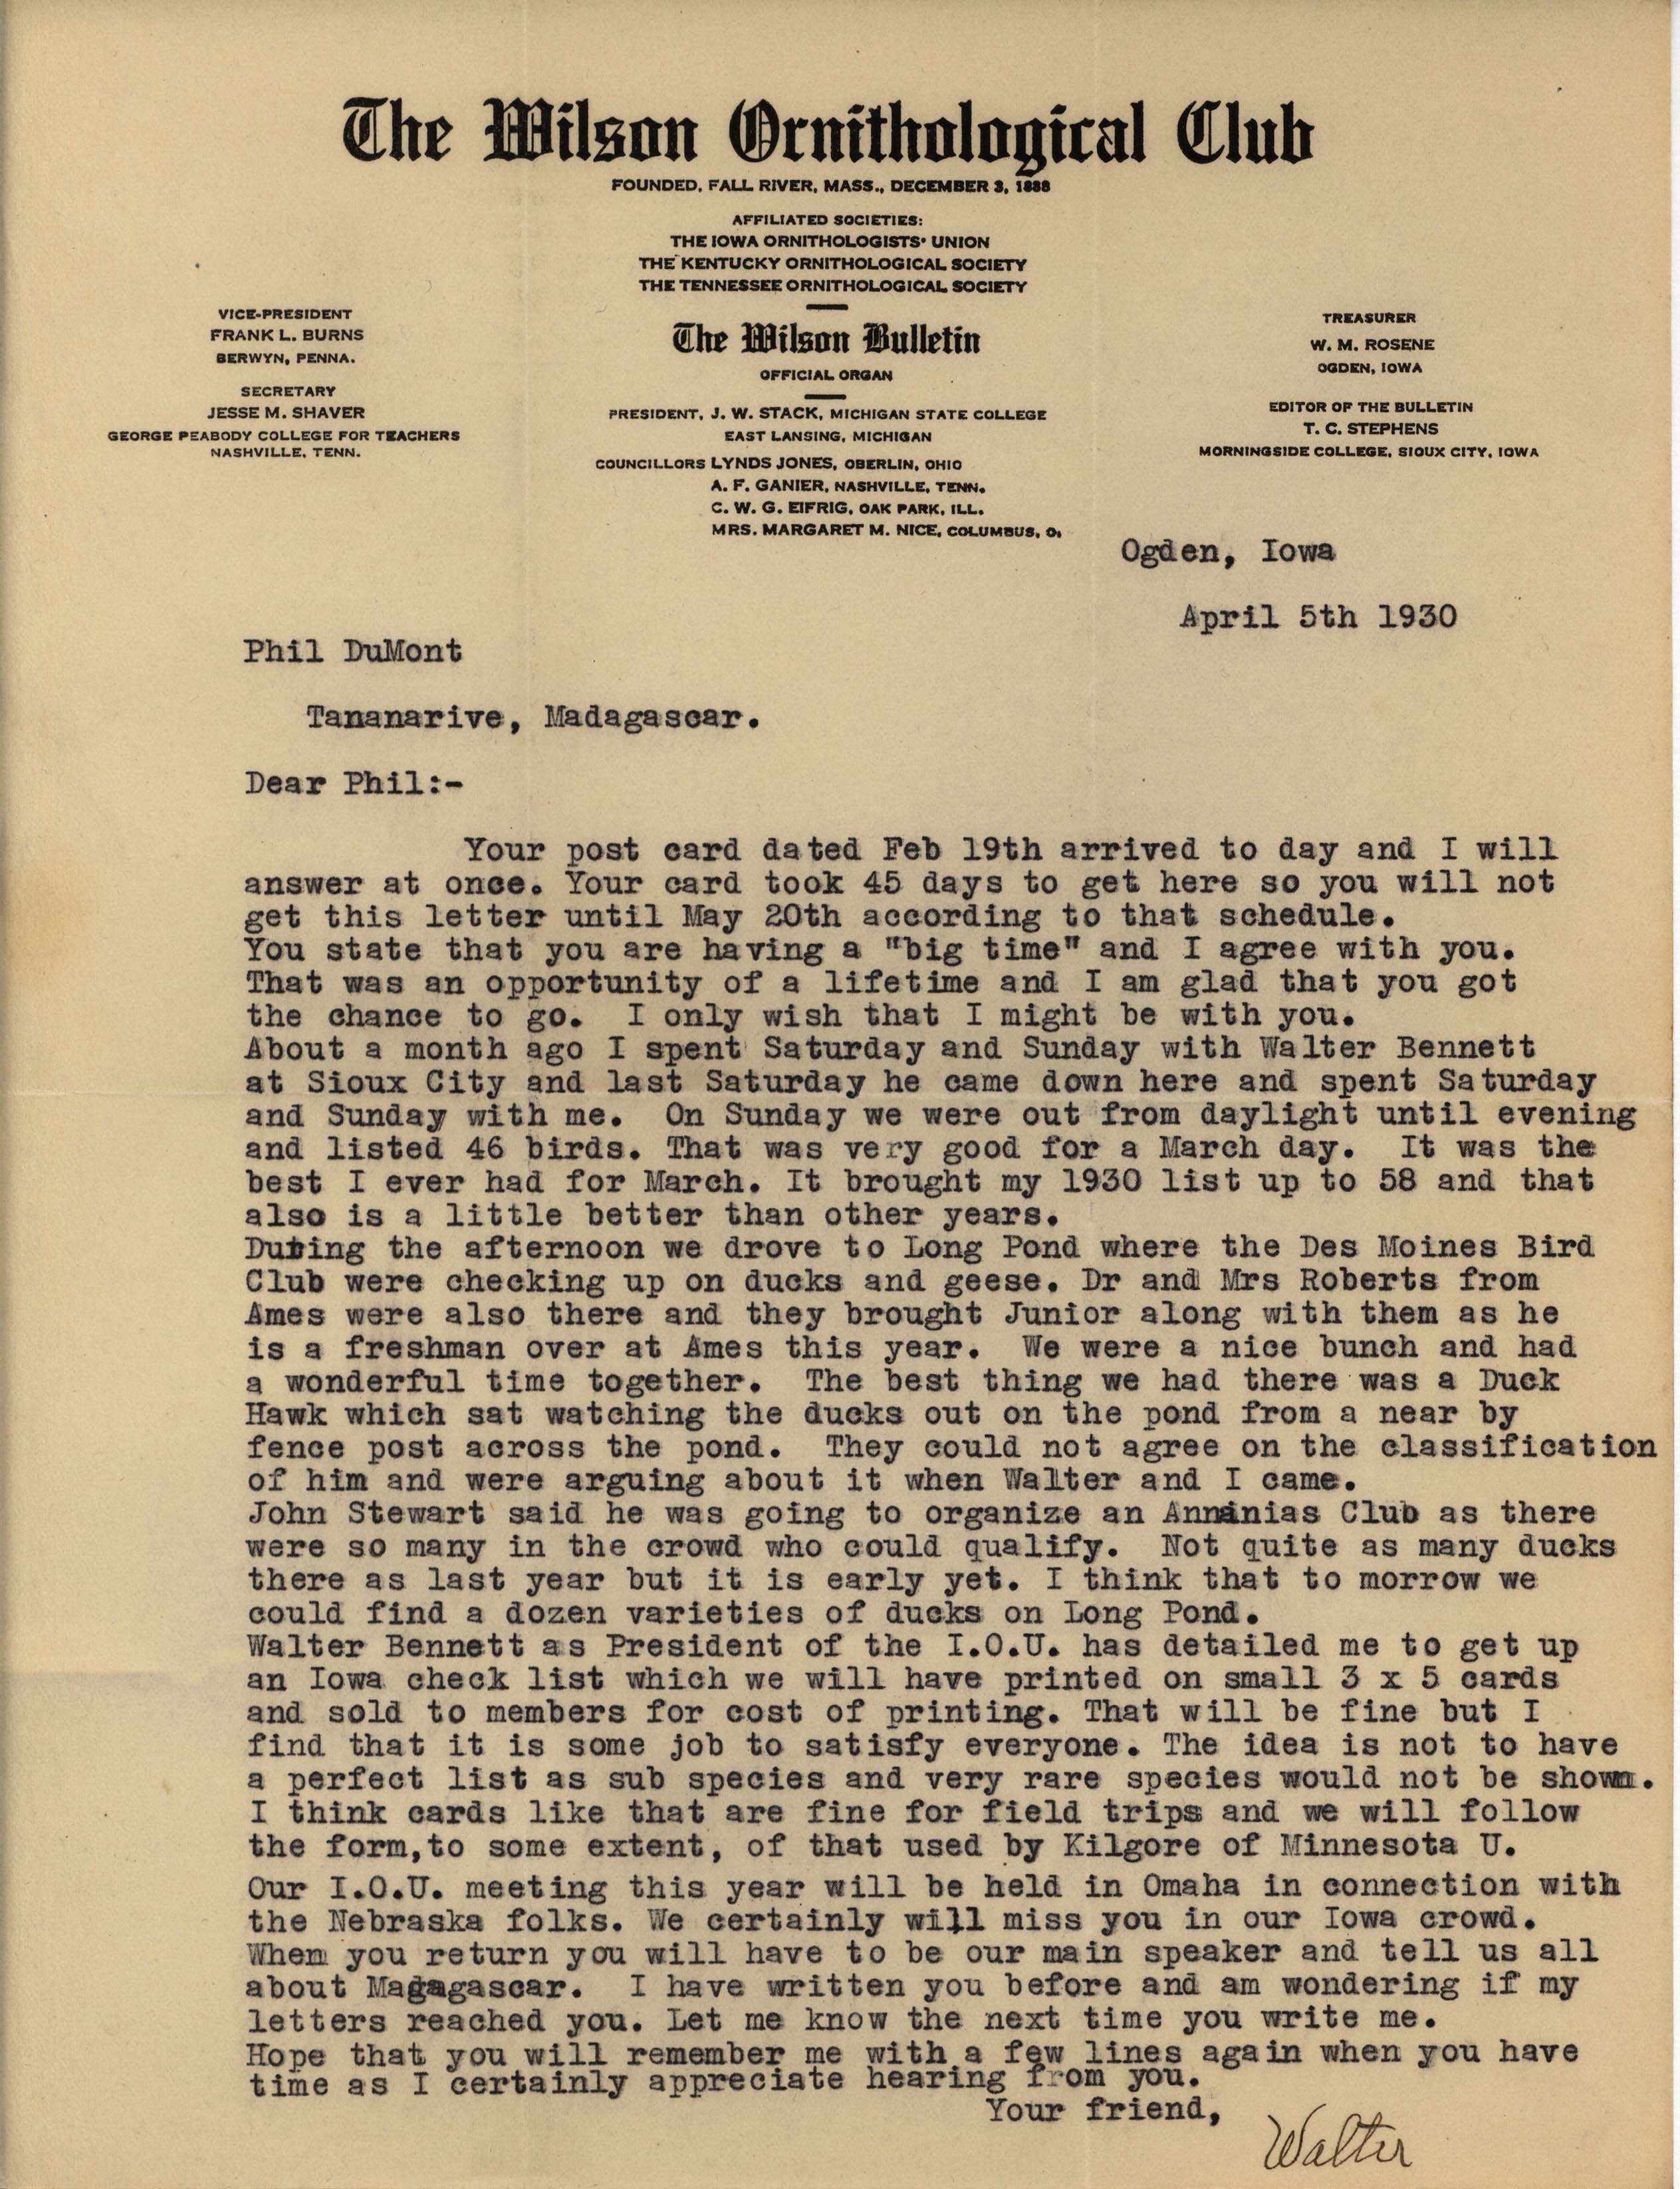 Walter Rosene letter to Philip DuMont regarding recent bird outings, April 5, 1930